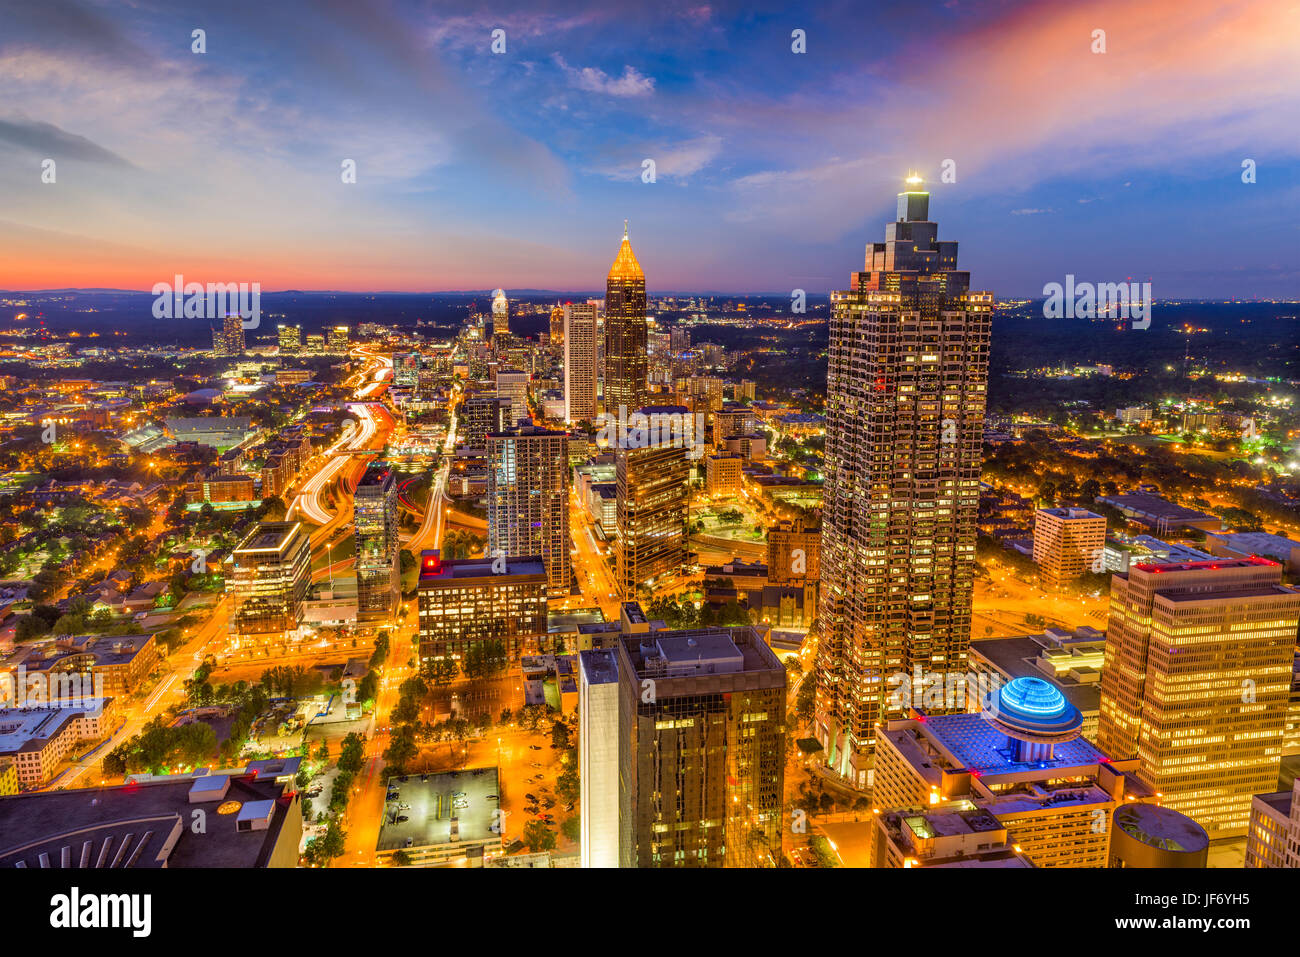 Atlanta, Georgia, USA downtown skyline at dusk. Stock Photo